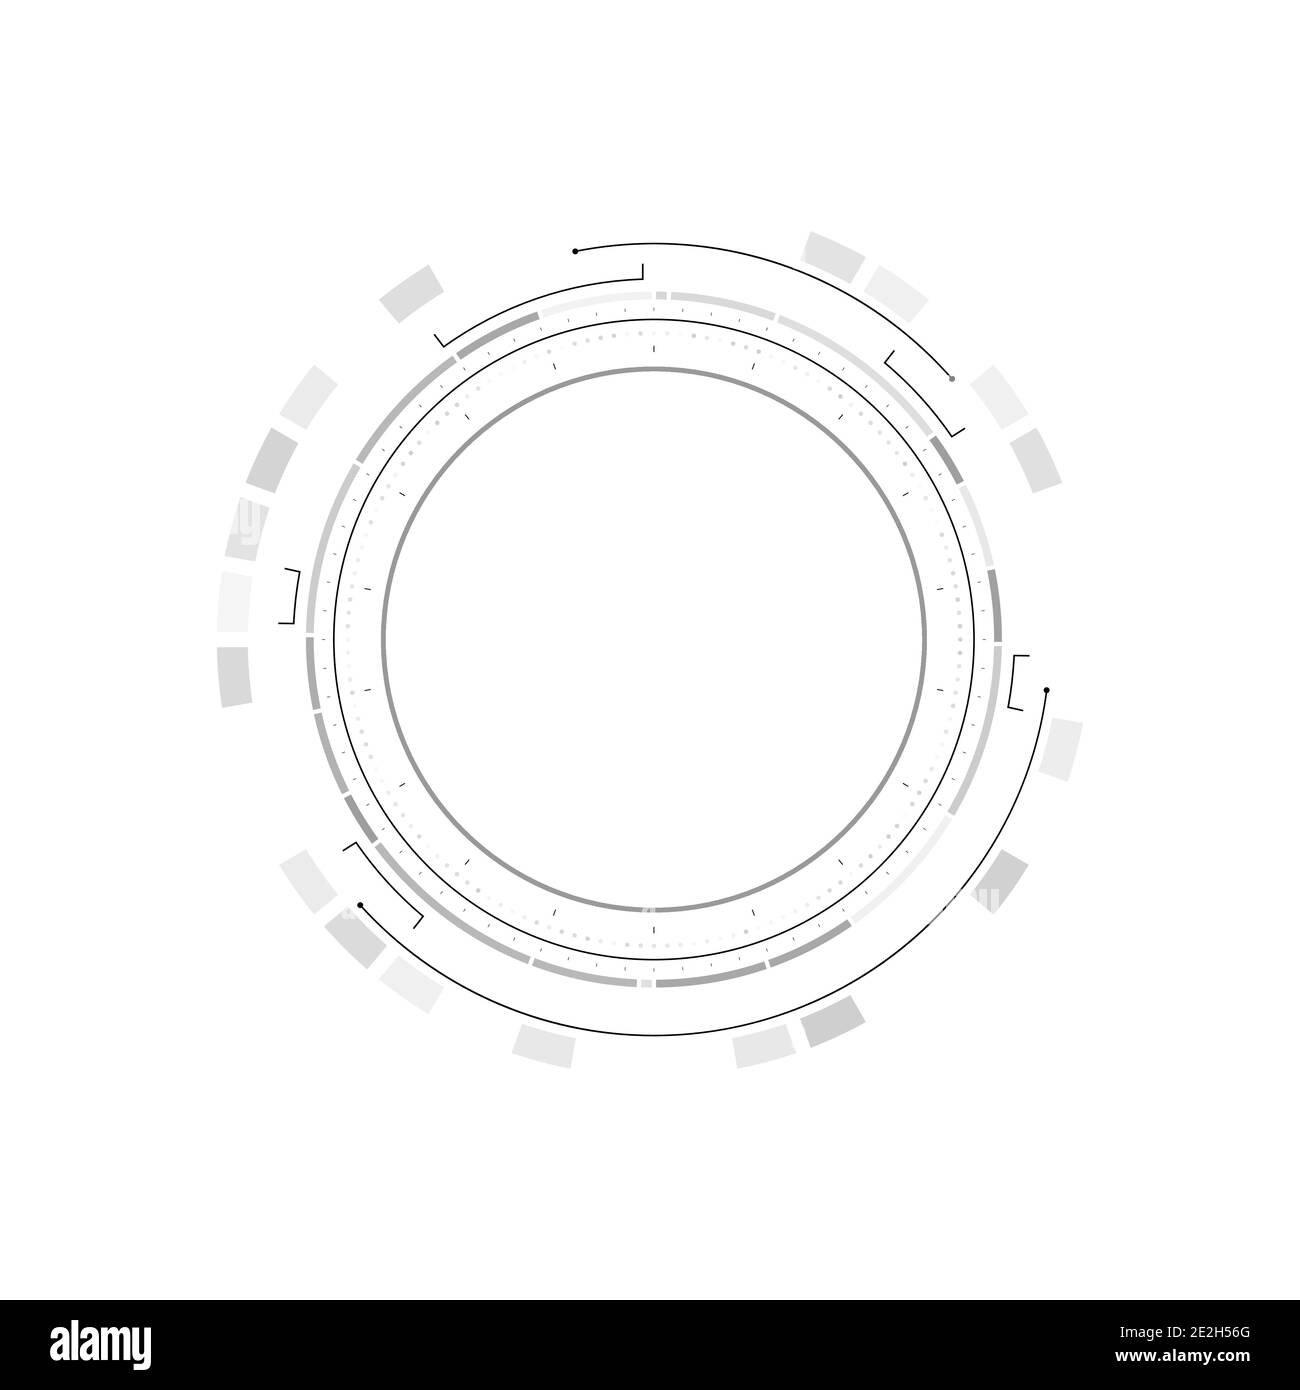 Elementi infografici del cerchio HUD. Display head-up rotondo sci-fi per interfaccia utente futuristica HUD, GUI. Tema tecnico e scientifico. Illustrazione vettoriale. Illustrazione Vettoriale